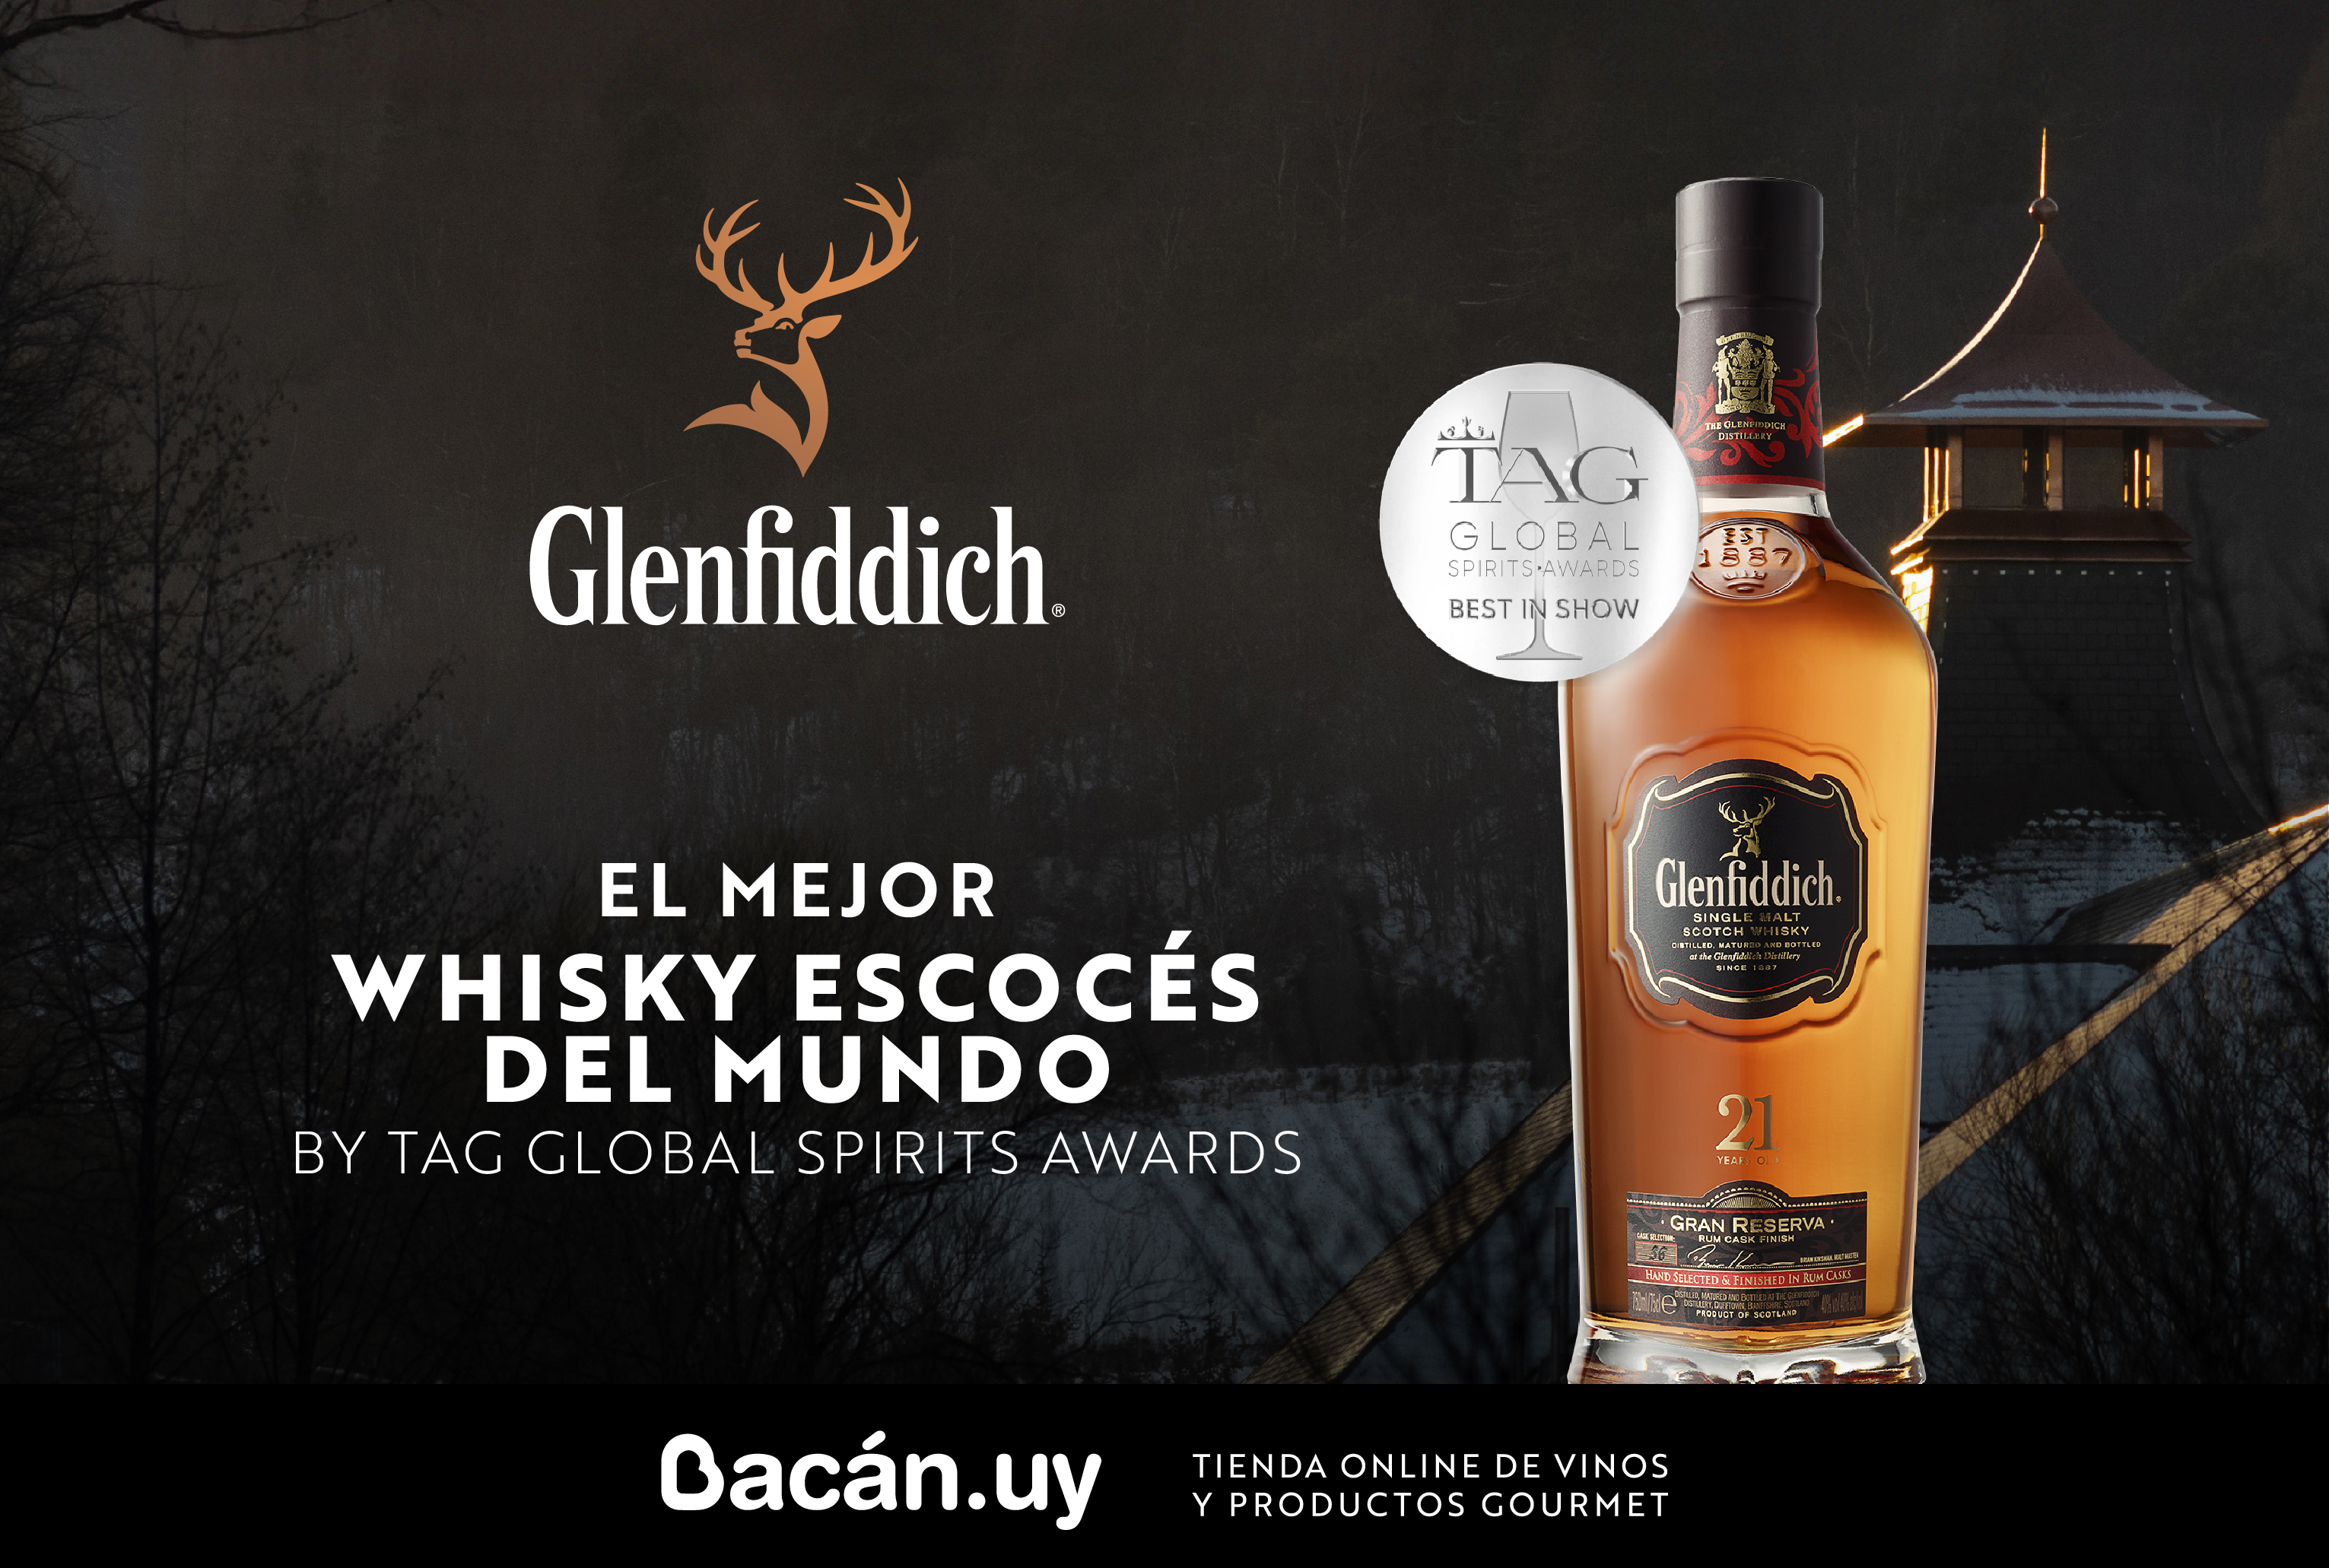 Glenfiddich 21 Años: El Mejor Whisky Escocés del Mundo.